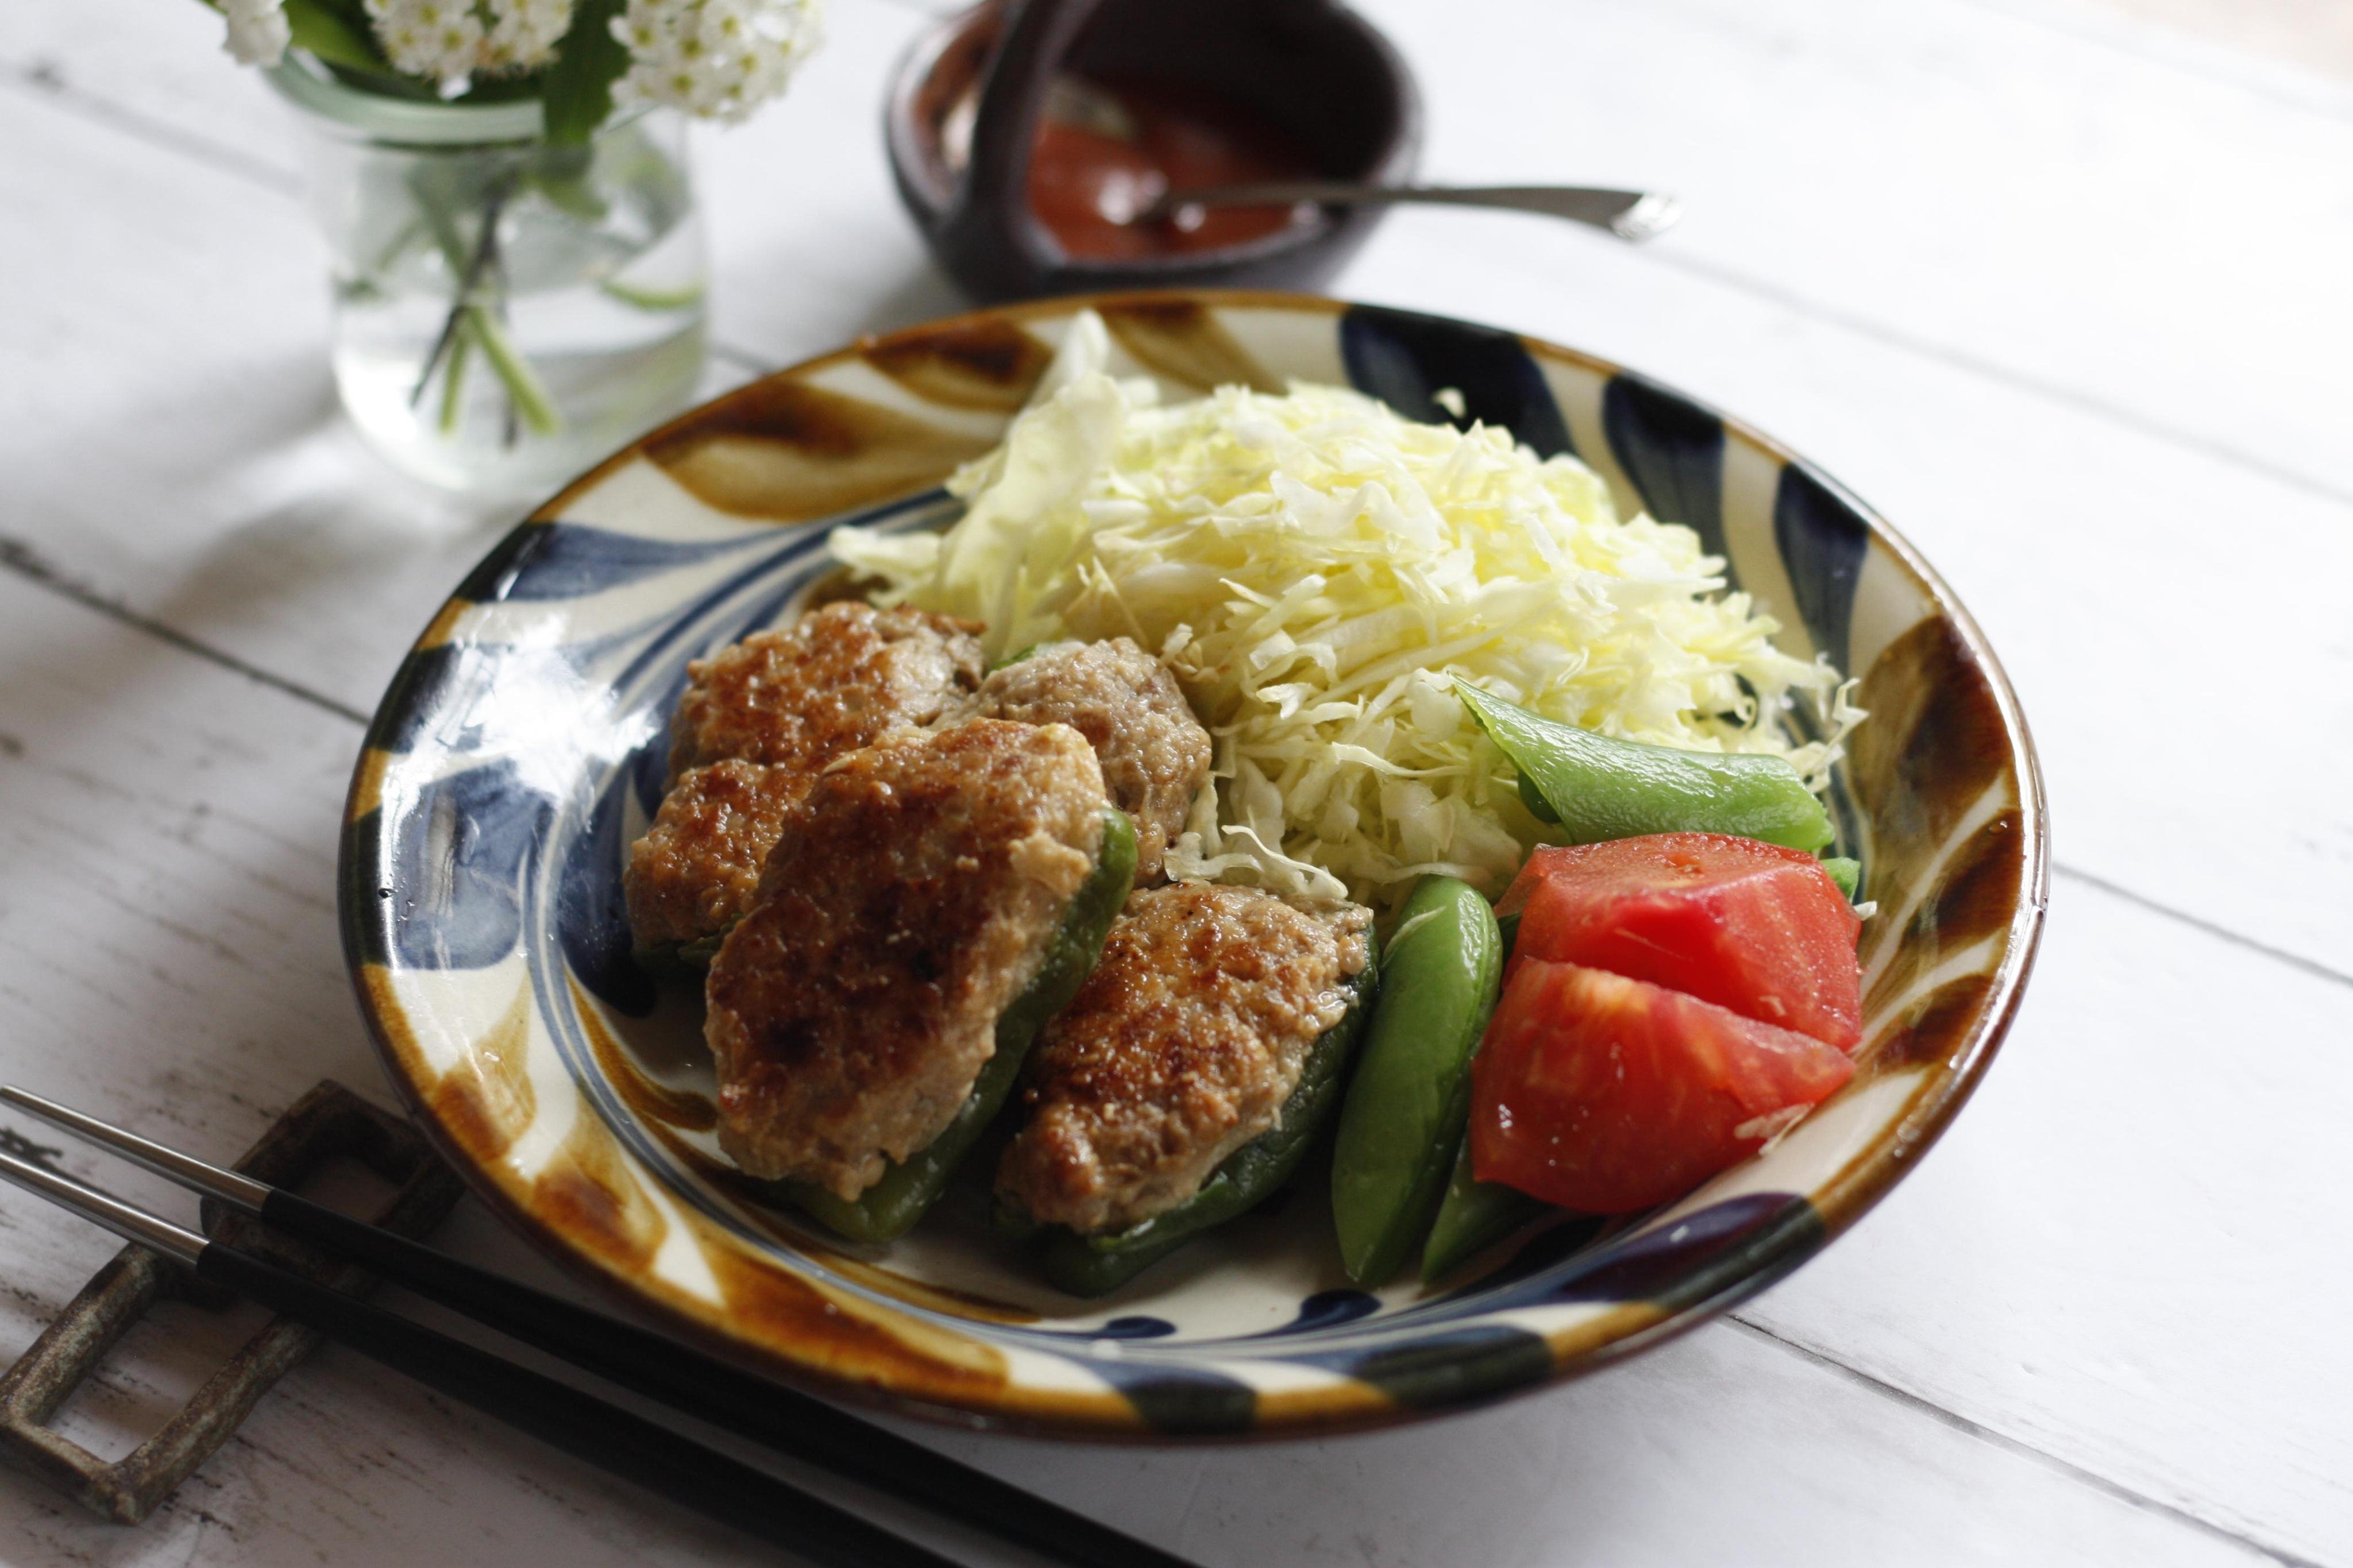 ピーマンの肉詰めのレシピ 作り方 小川 典子 料理教室検索サイト クスパ